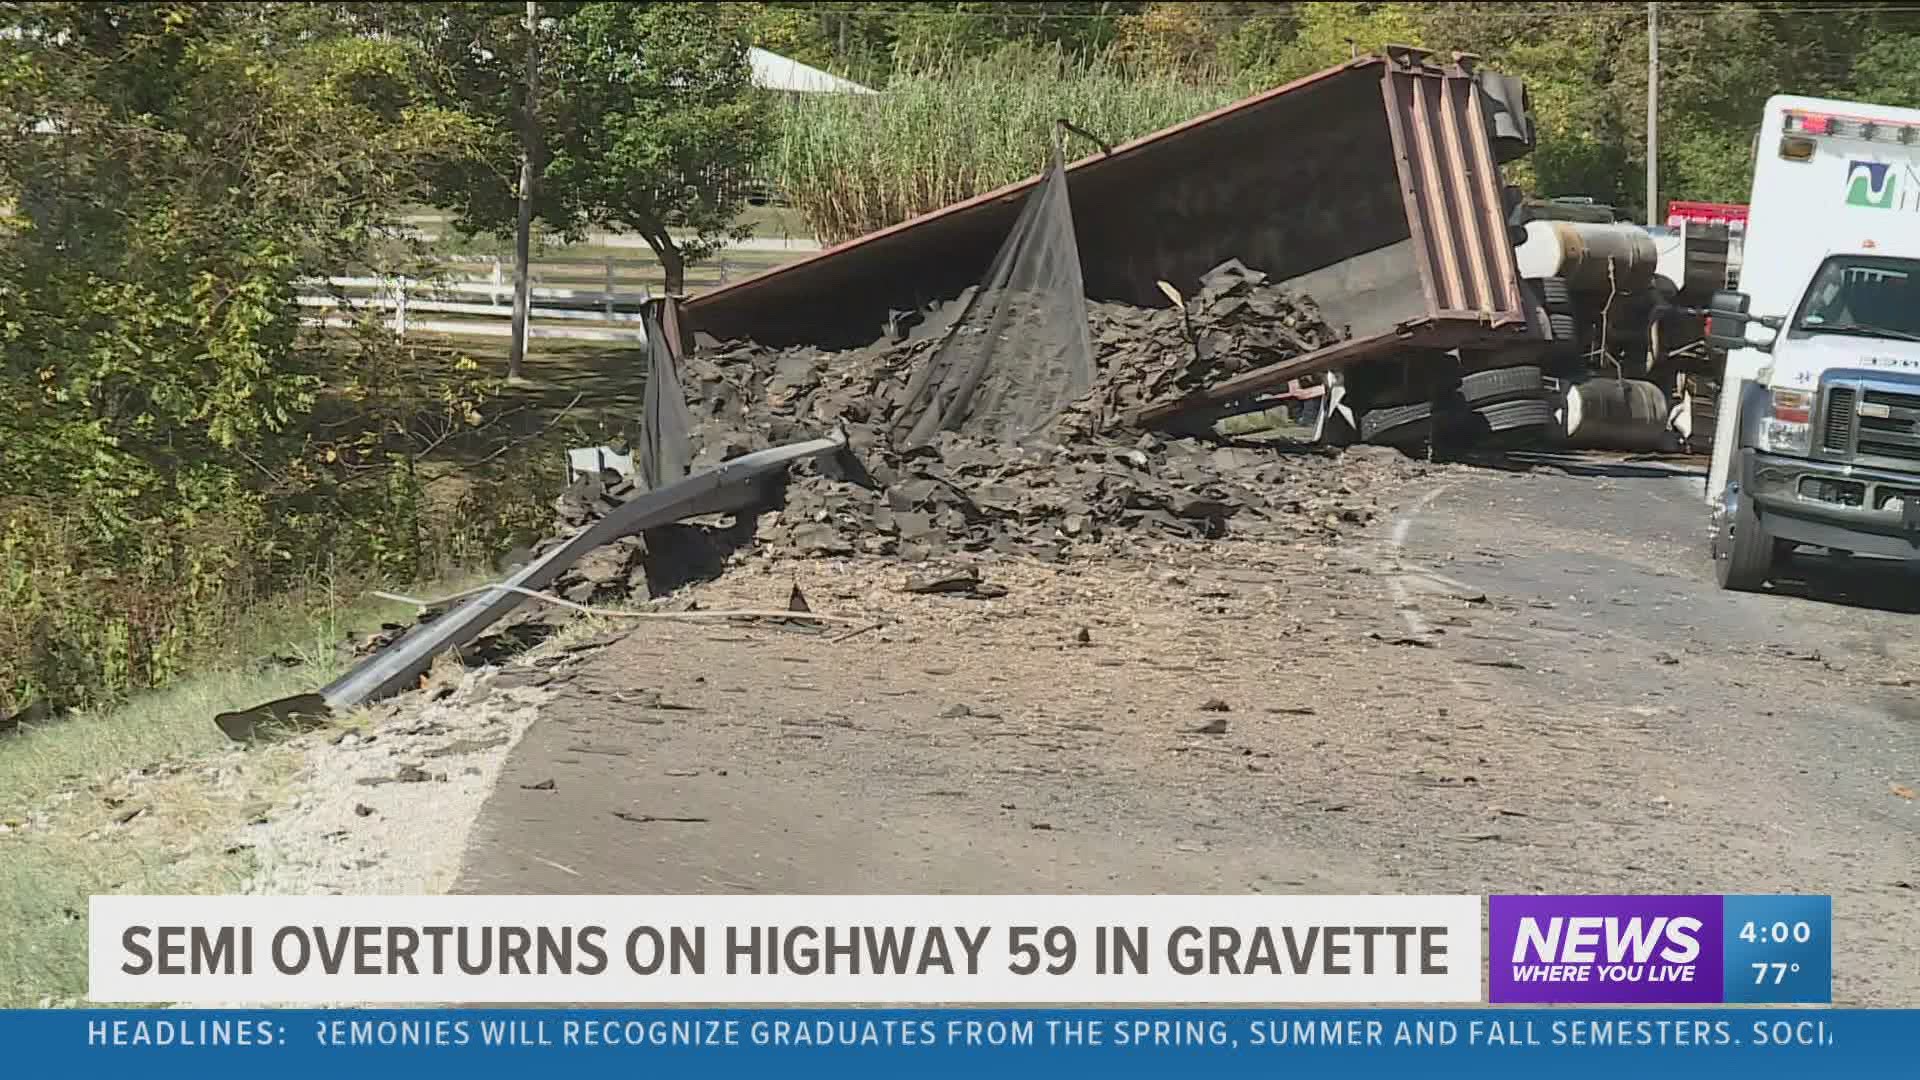 Semi overturns on Highway 59 in Gravette